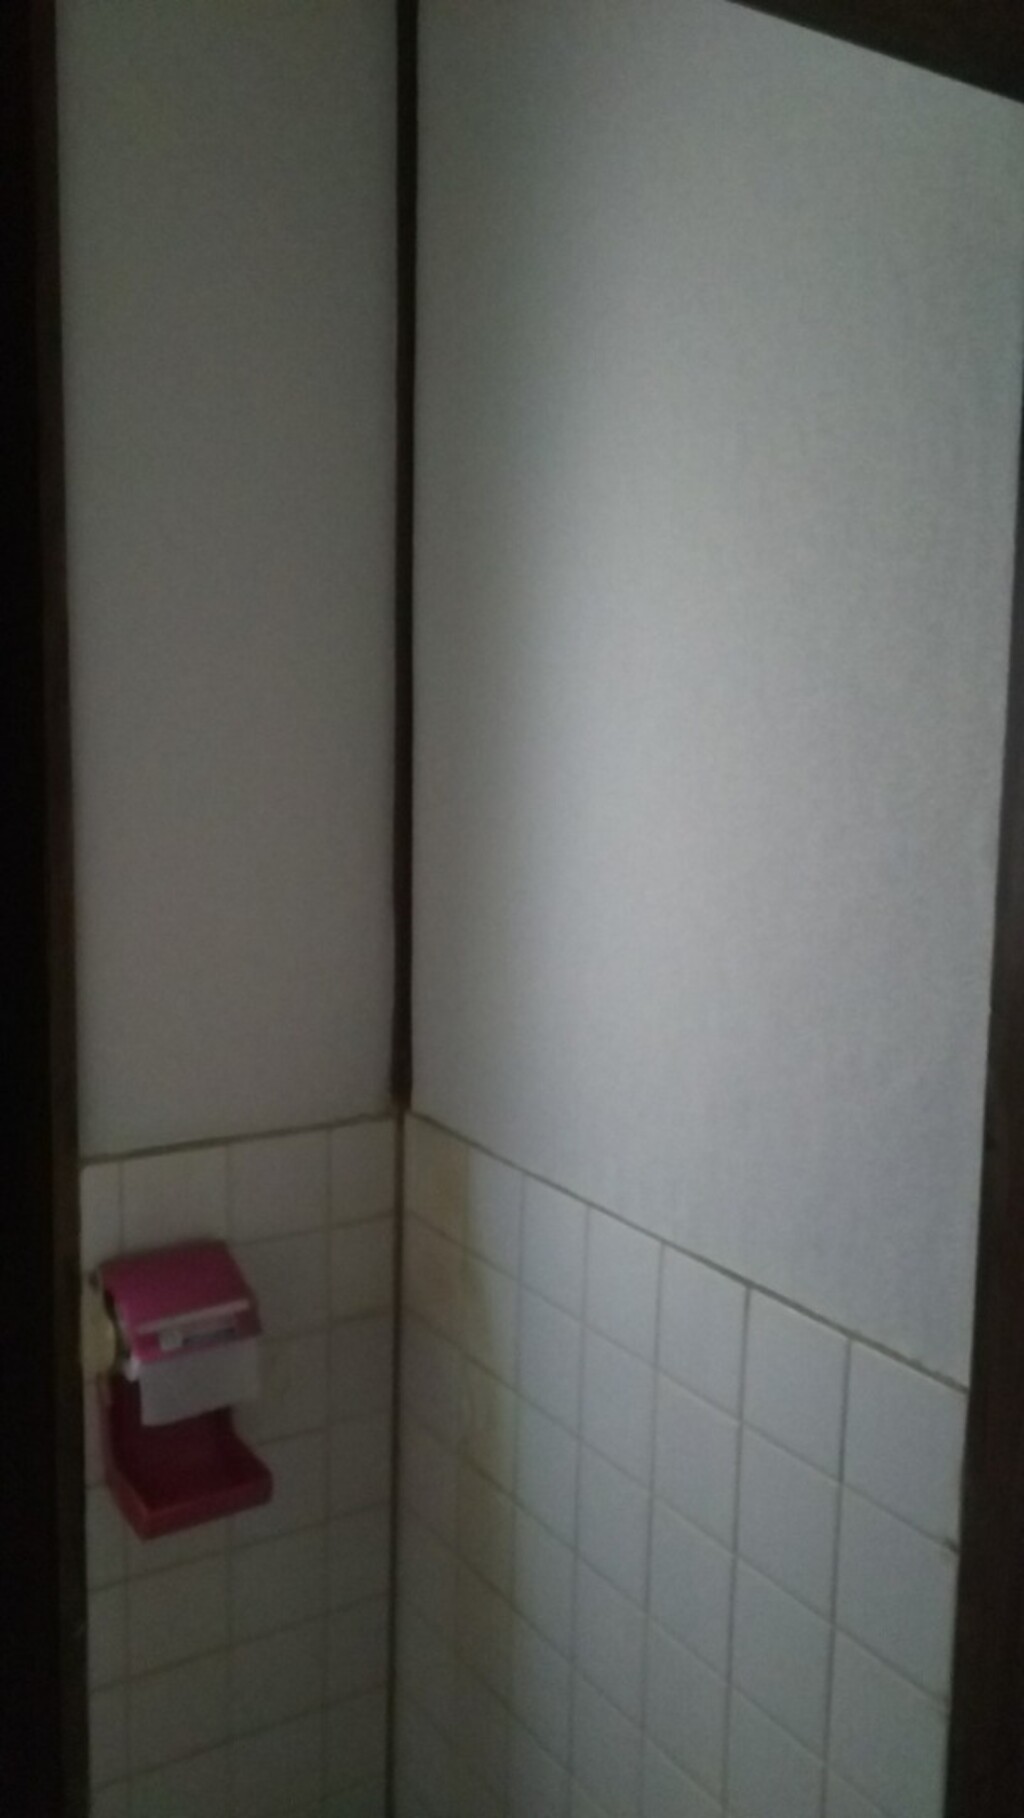 Diyで昭和な古いトイレを快適にしちゃいます その1 繊維壁に壁紙を張る Limia リミア